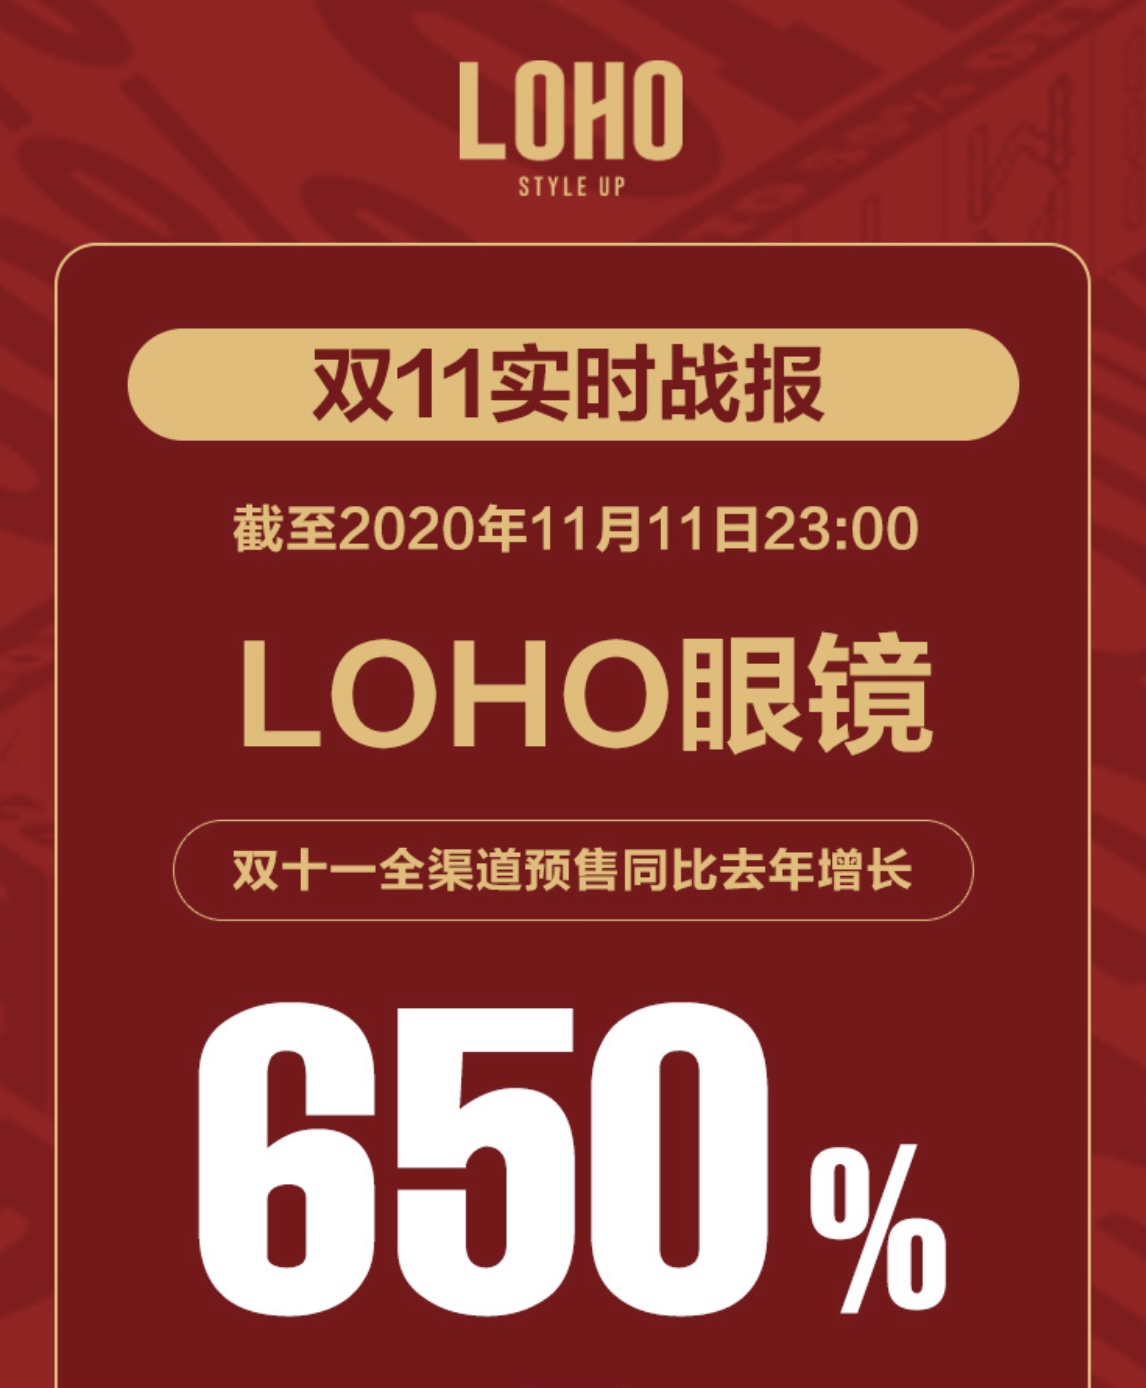 LOHO2020双11战报：销量突破36万副，同比去年增长650%